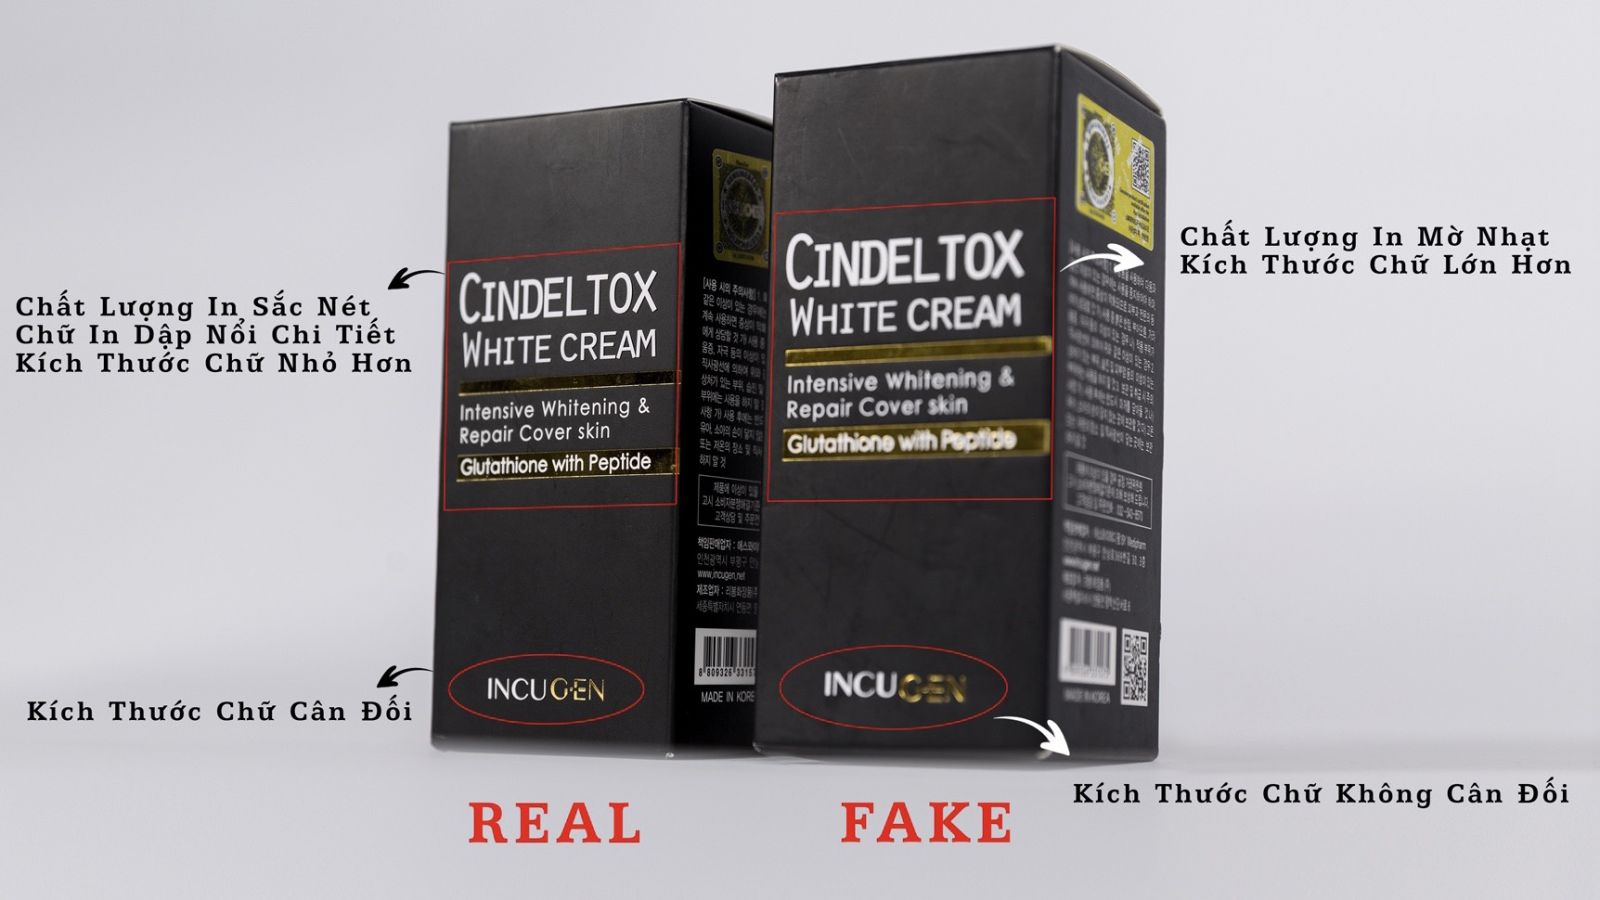 Thiên Long – nhà phân phối độc quyền Cindel Tox chính hãng tại Việt Nam cảnh báo về hàng giả, hàng nhái và hướng dẫn cách phân biệt Cindel Tox thật giả